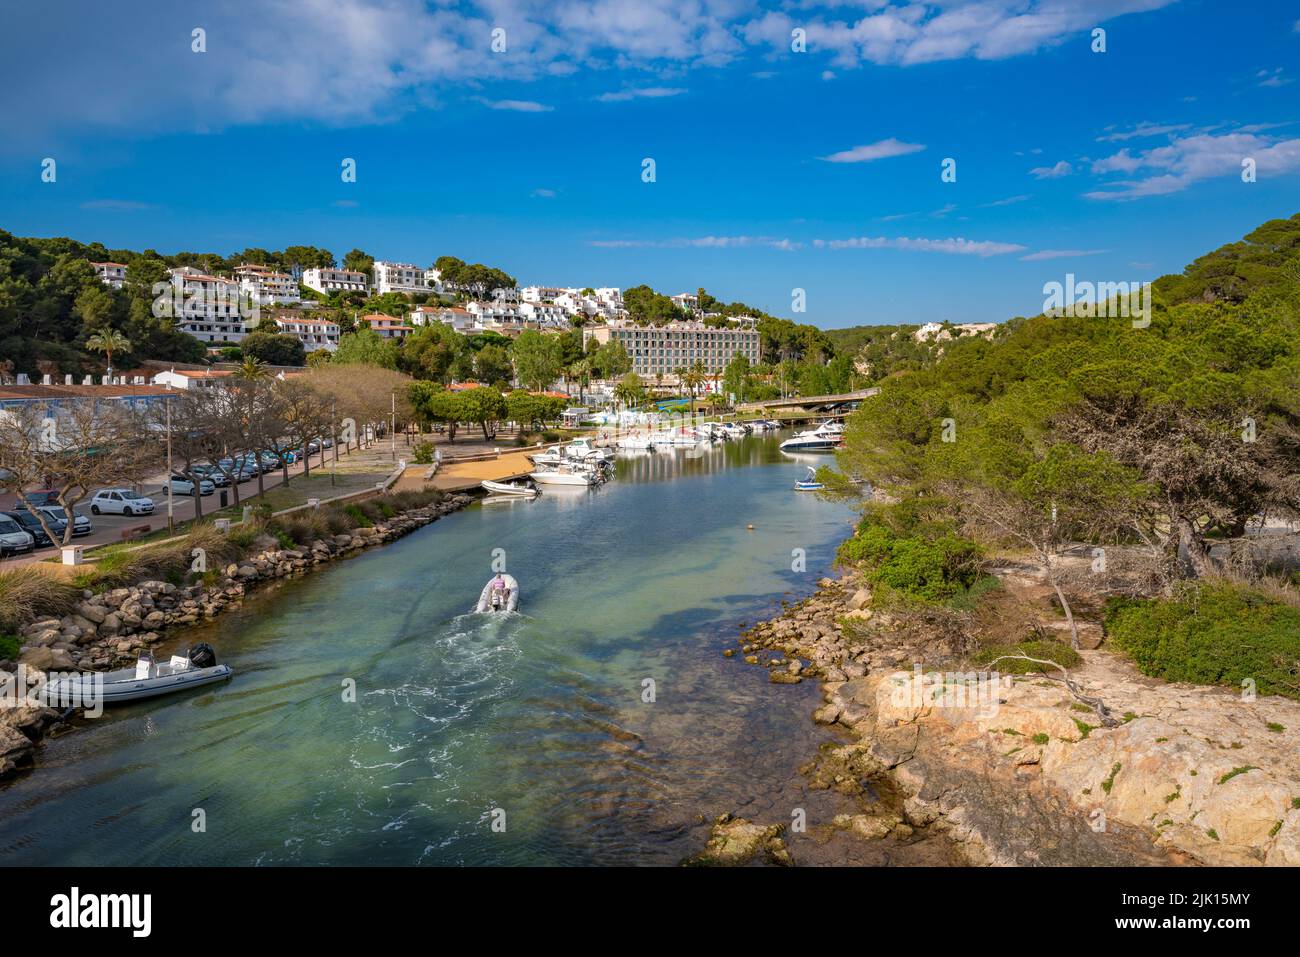 Vue des hôtels avec vue sur les bateaux de la marina à Cala Galdana, Cala Galdana, Minorque, Iles Baléares, Espagne, Méditerranée, Europe Banque D'Images